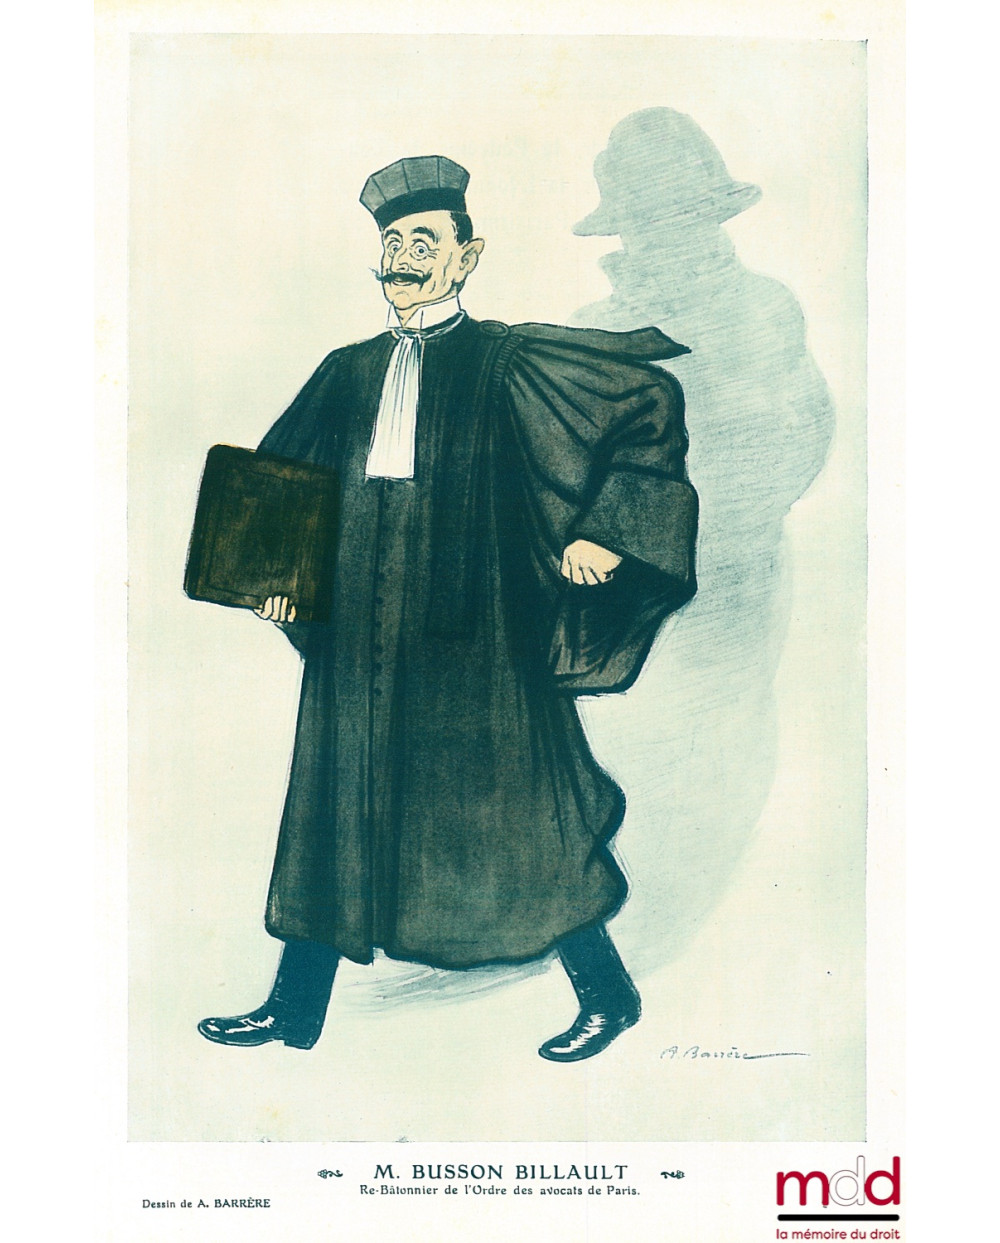 M. BUSSON BILLAULT, Re-Bâtonnier de l’Ordre des avocats de Paris. Caricature de A. Barrère reproduite dans le magasine Fantas...